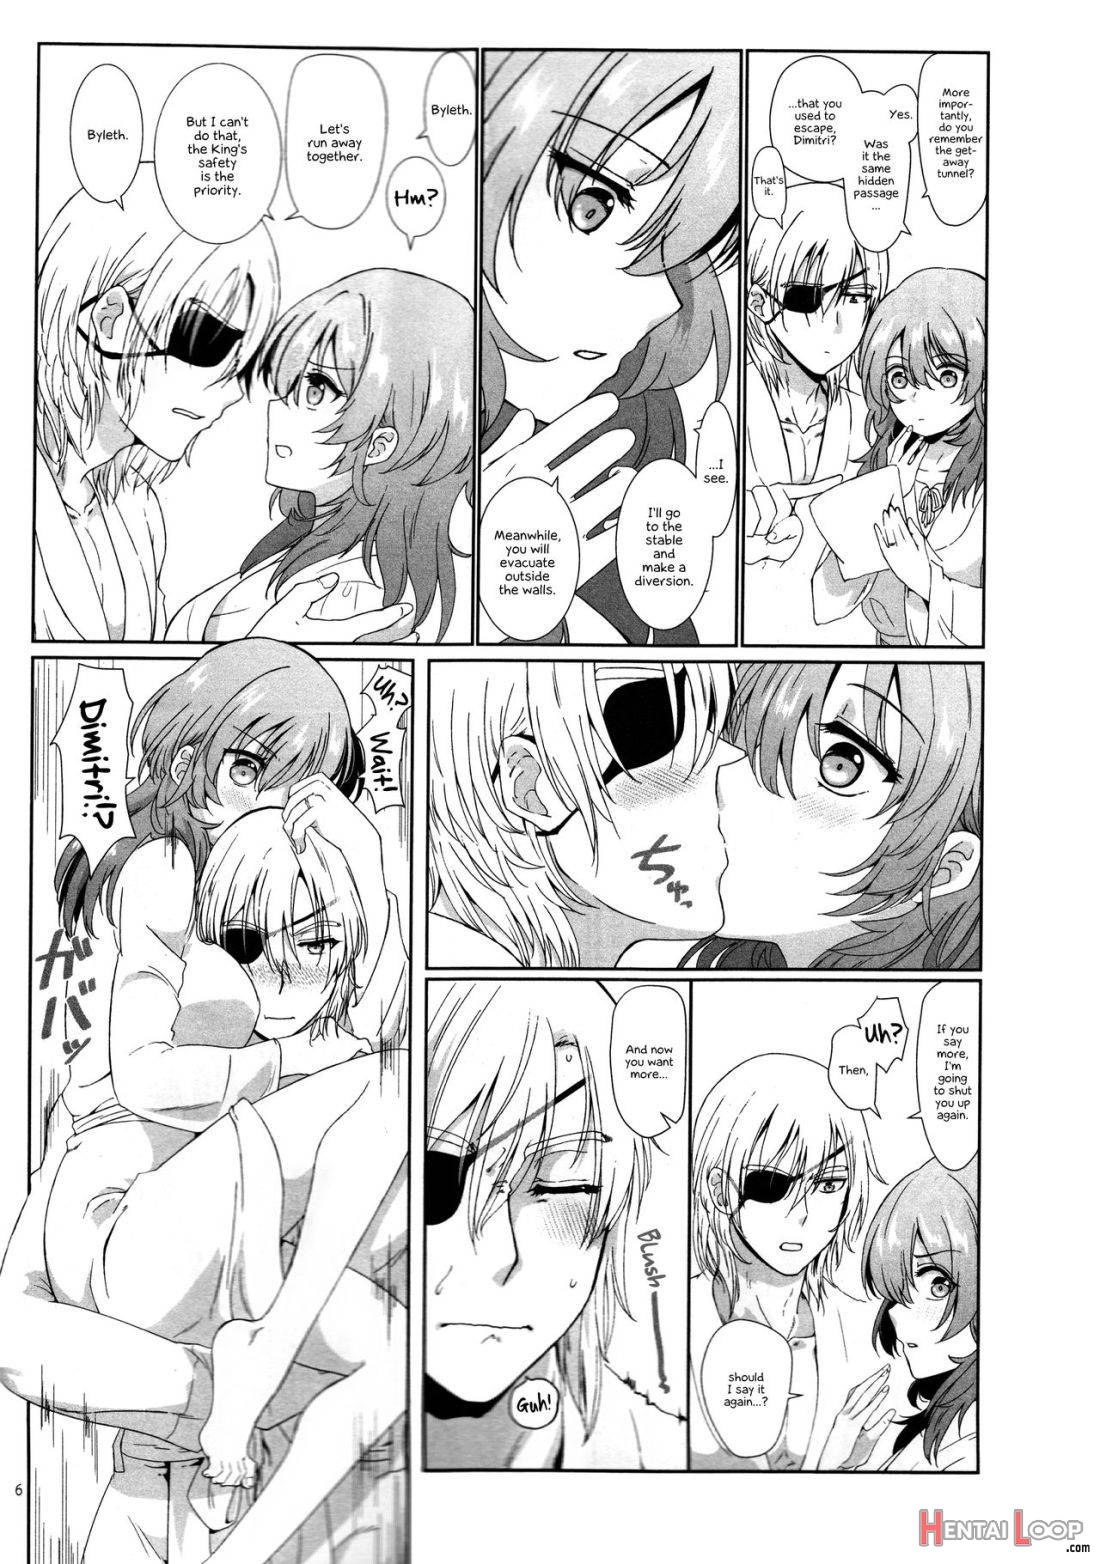 Shishi no Hanayome page 5